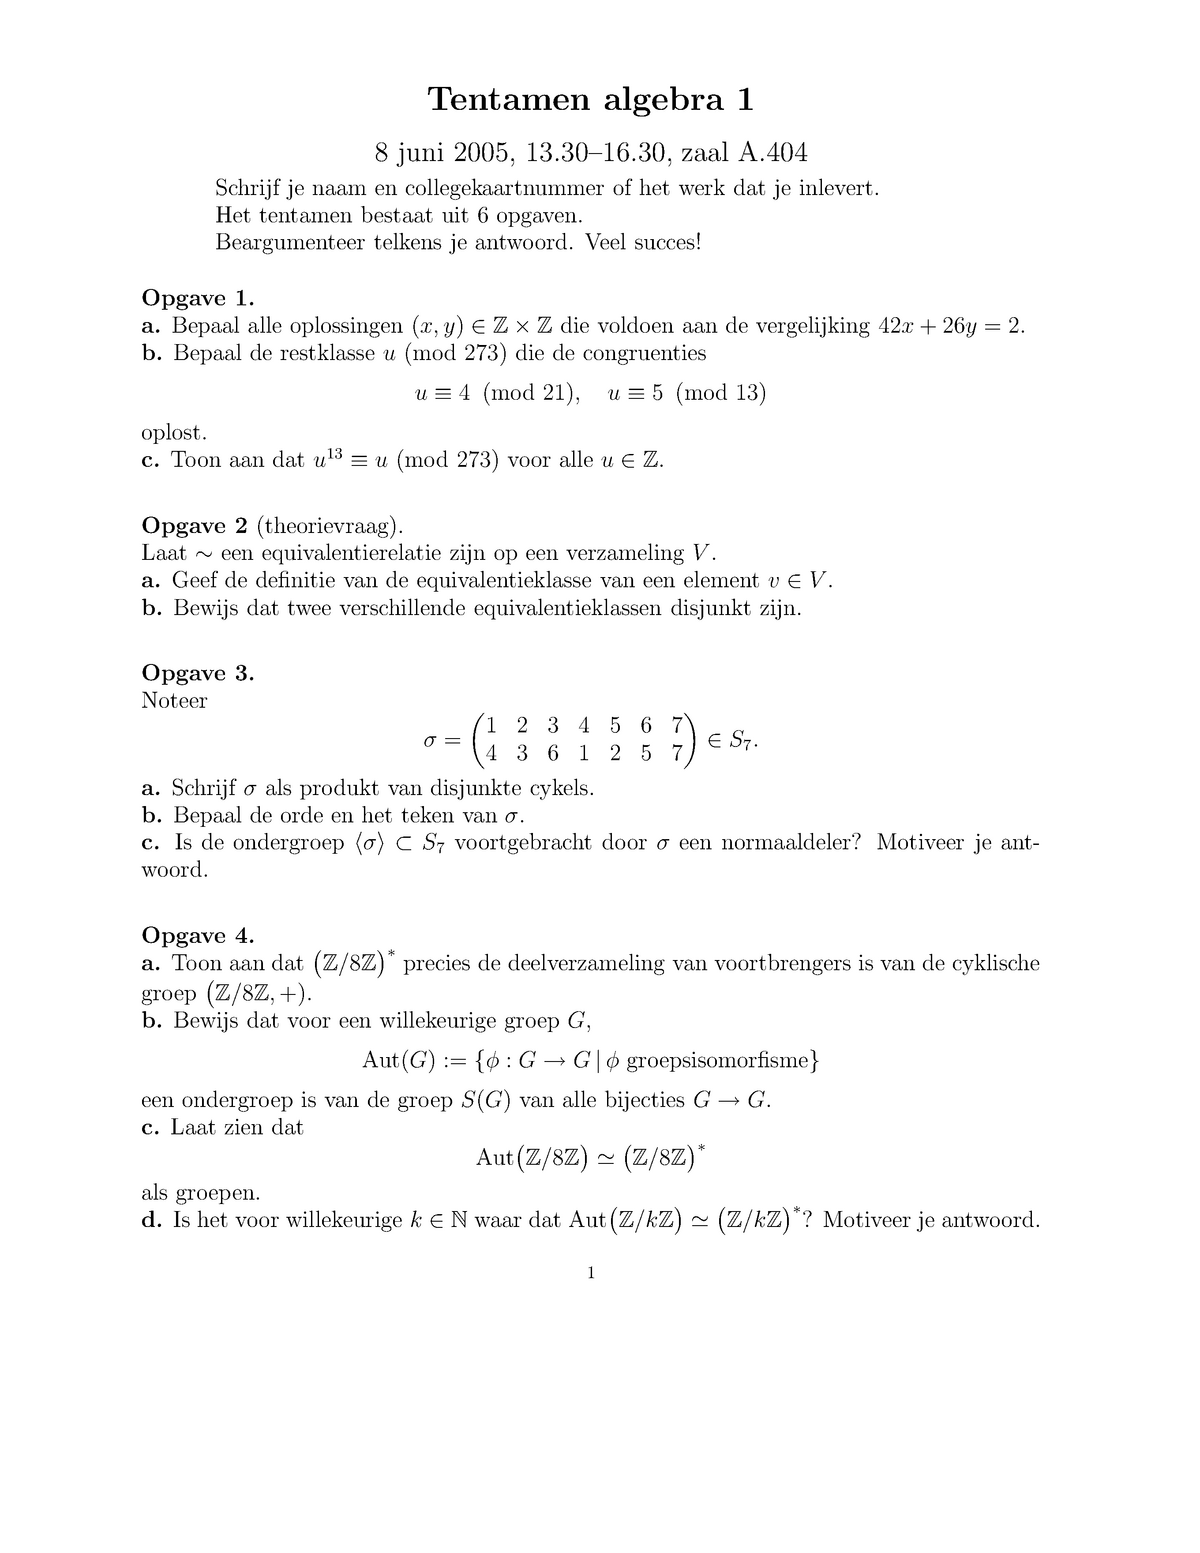 Tentamen 8 Juni 05 Algebra 1 Vragen Studeersnel